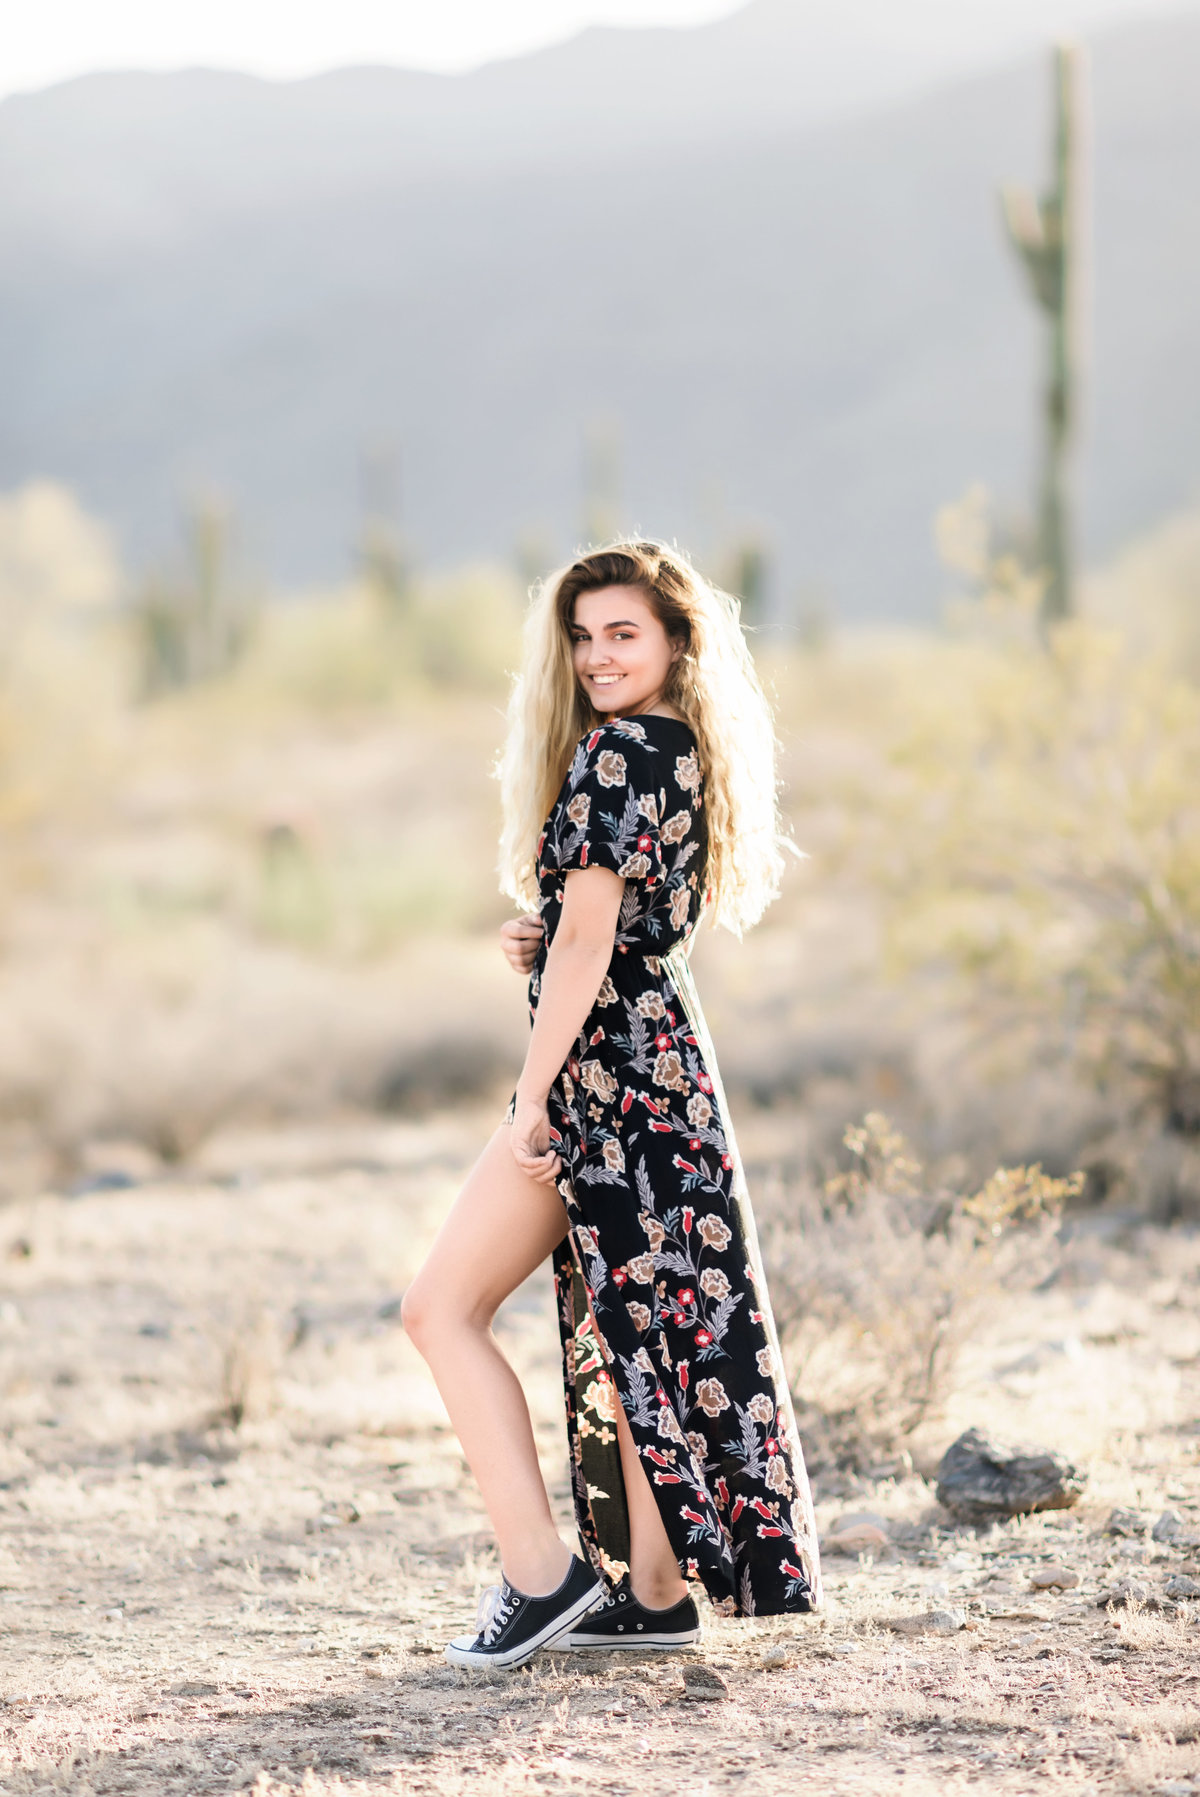 Kaitlyn's-Senior-Photos-White-Tank-Mountains-Arizona-Ashley-Flug-Photography13